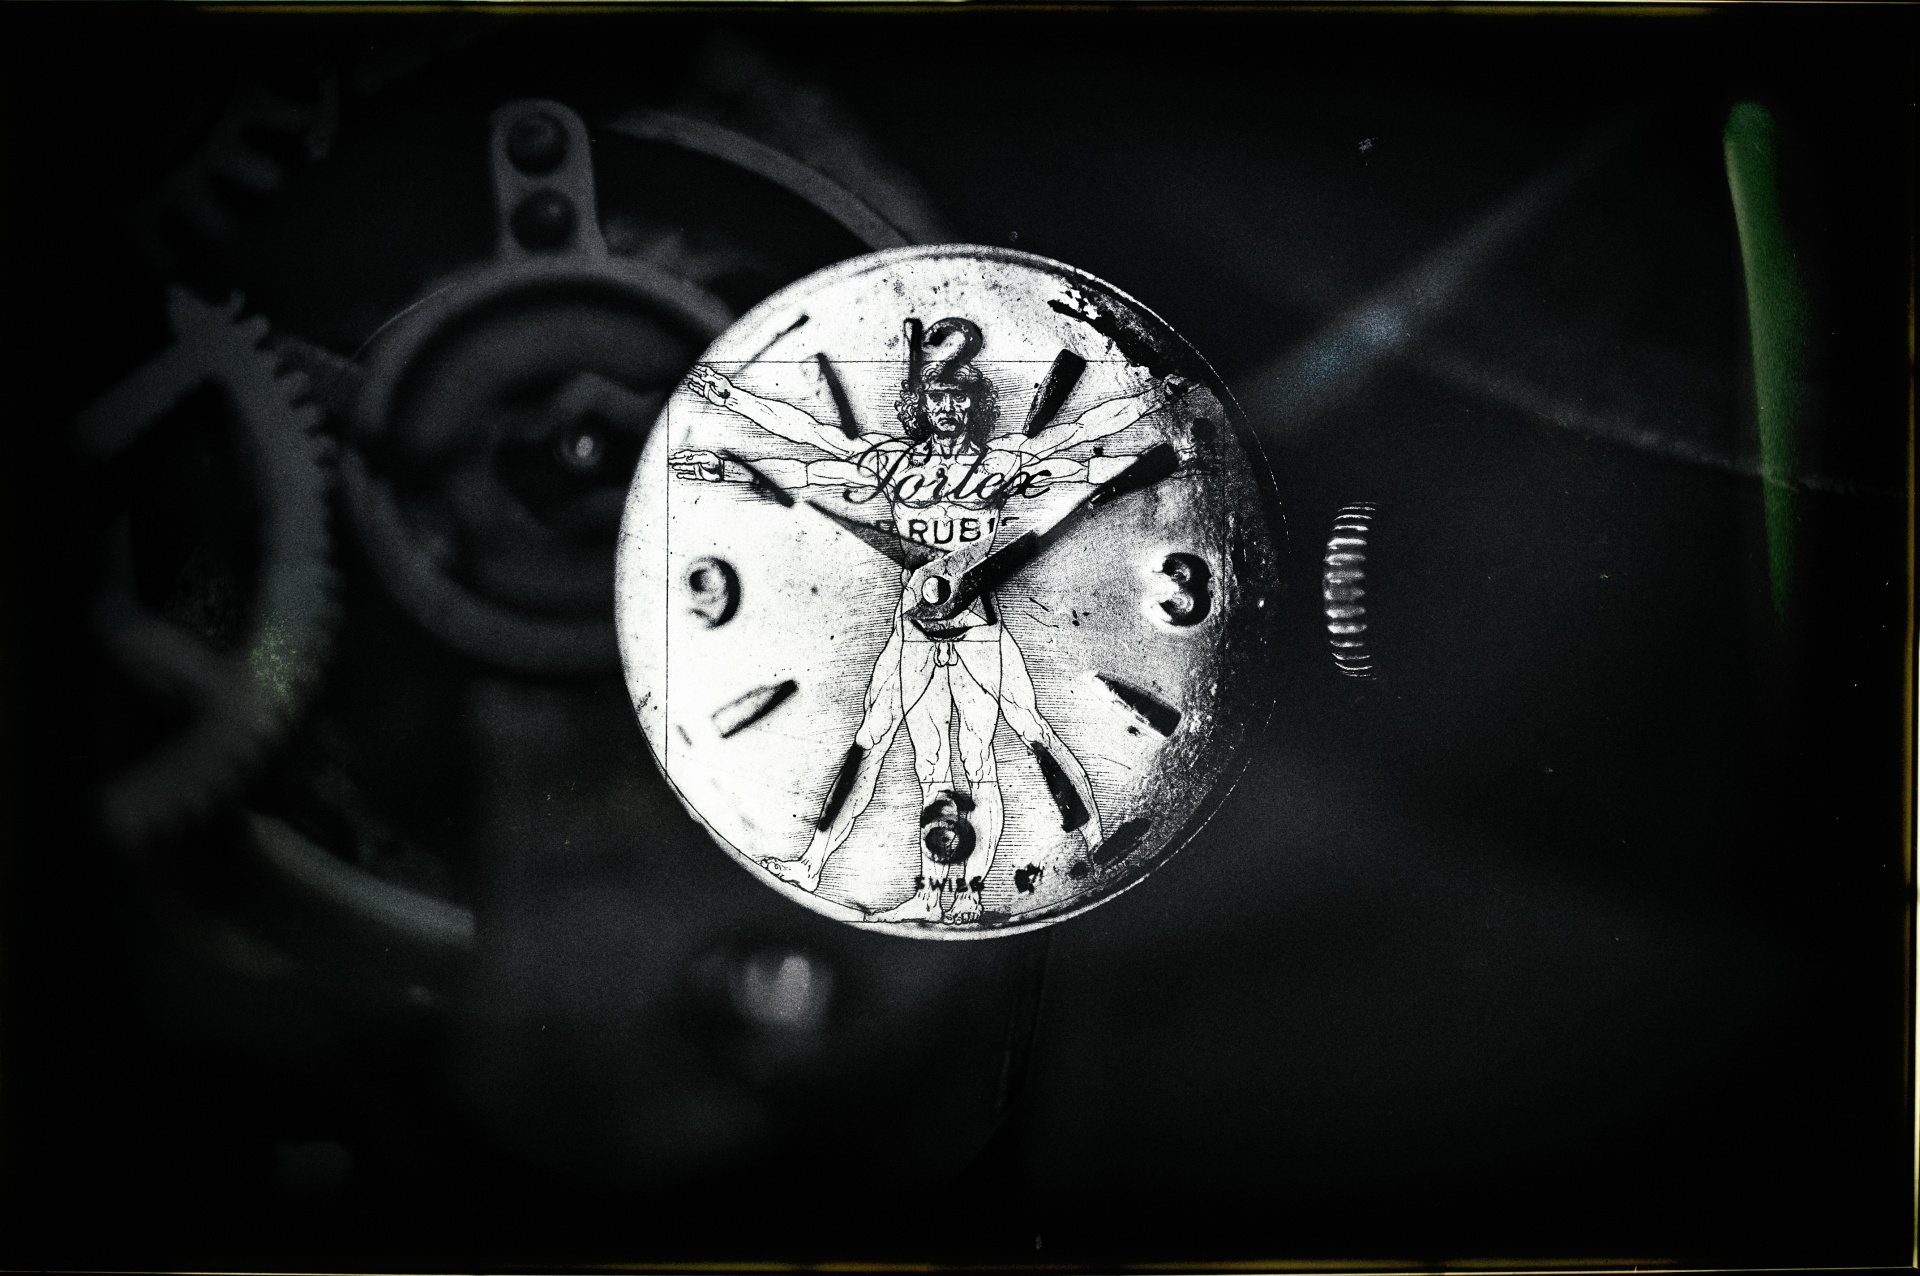 Polvere di stelle, Ita In occasione di una delle mie ricorrenti visite presso un mercatino antiquario ho avuto modo di acquistare dieci vecchie casse di orologi, le quali, riflettendo, mi hanno ispirato un progetto sul